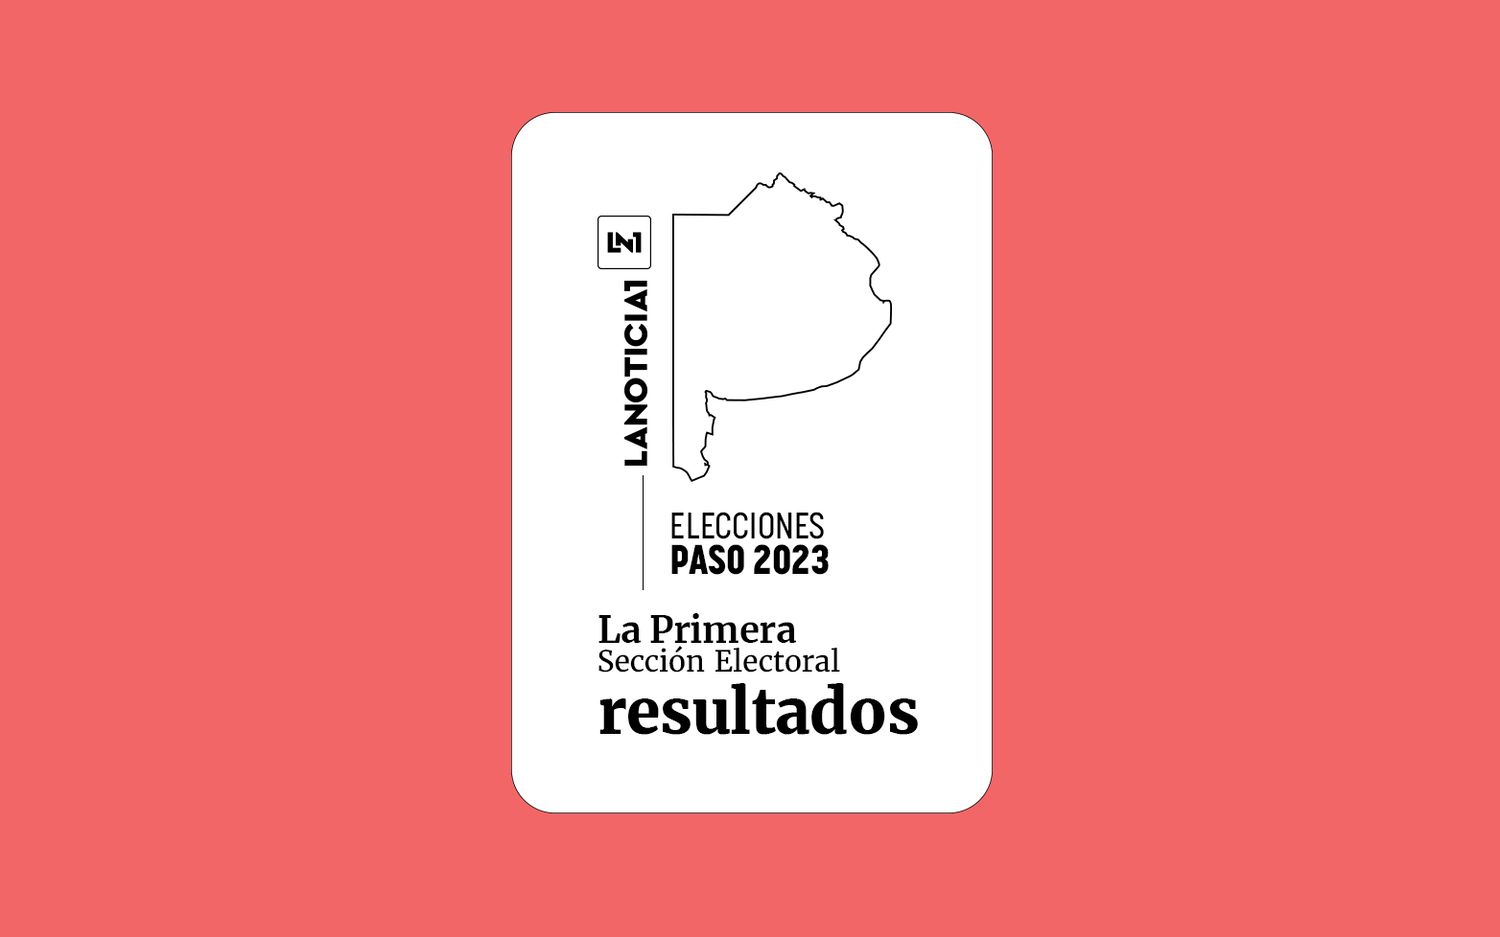 Elecciones PASO 2023: Resultados oficiales en la Primera Sección Electoral